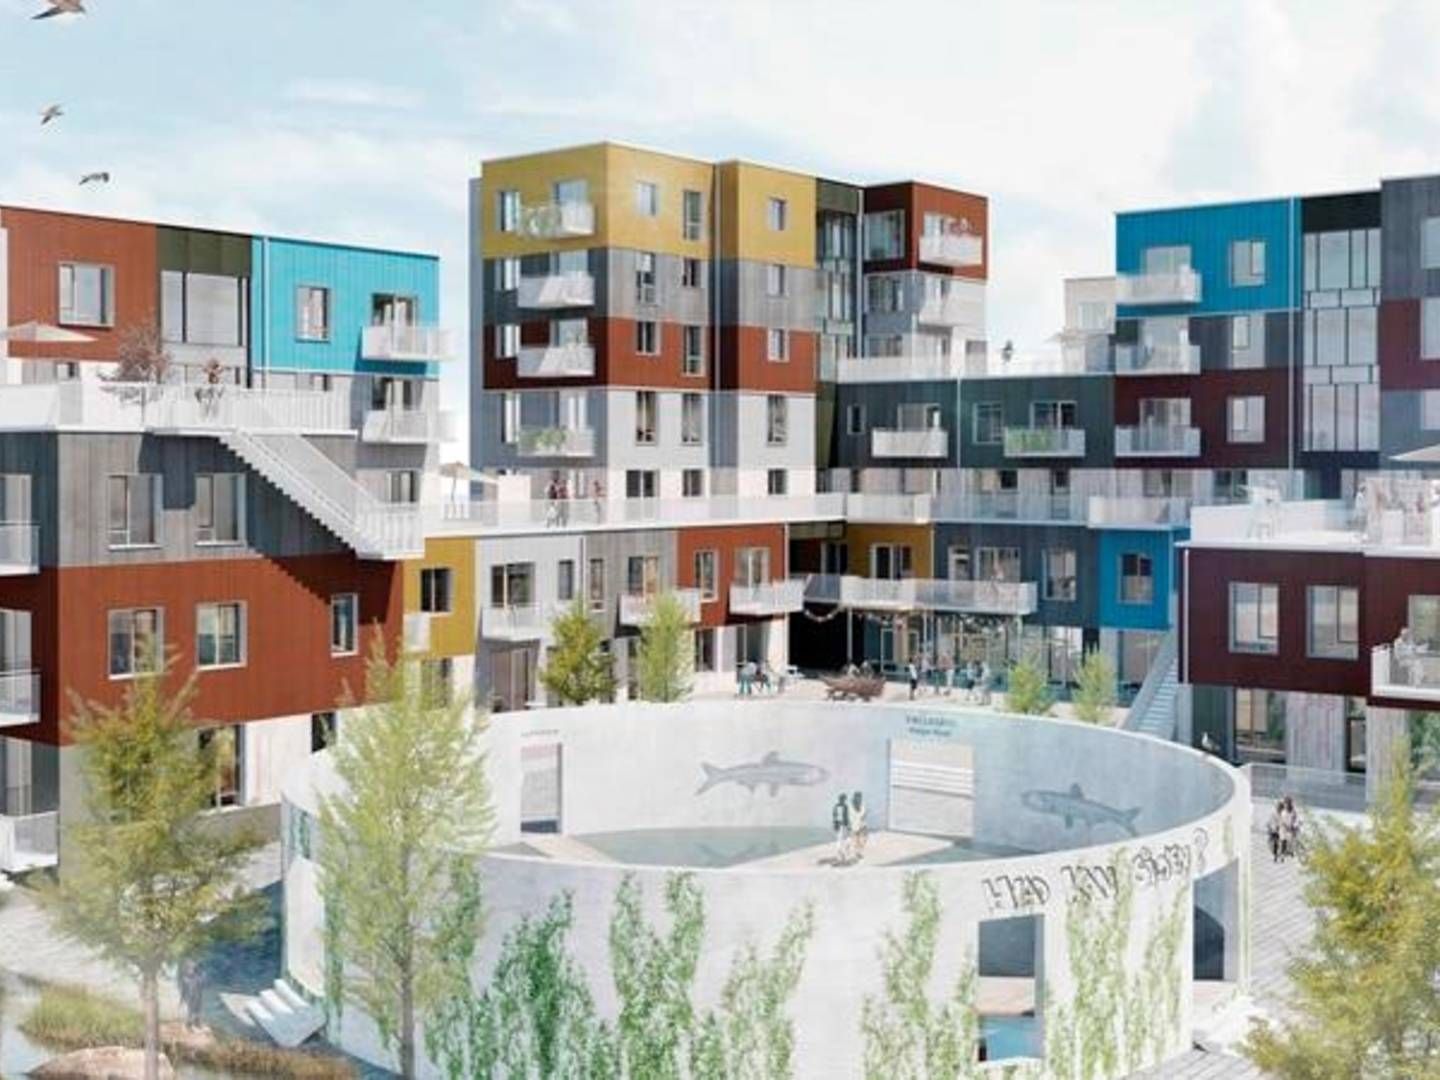 Fællesbyg Køge Kysts kommende byggeri. Visualisering: Tegnestuen Vandkunsten. | Foto: PR/Vandkunsten/Fællesbyg Køge Kyst